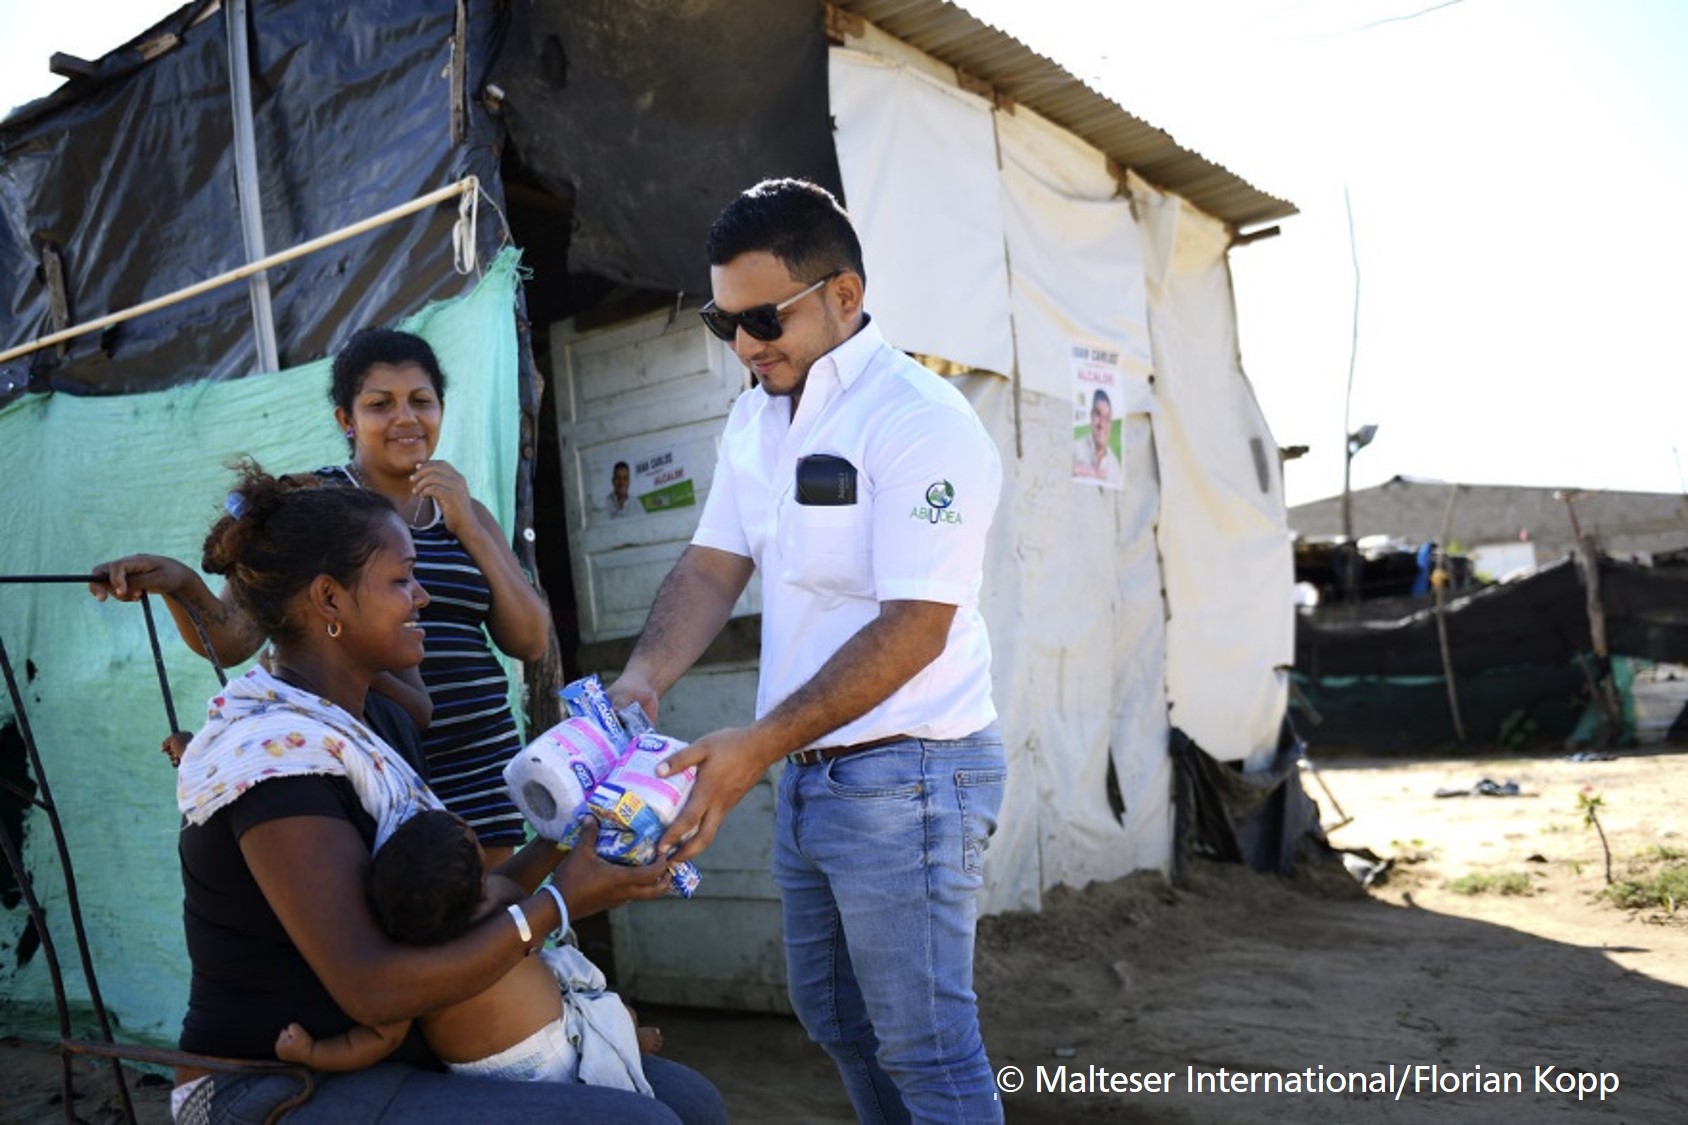 Malteser International: medical care for Venezuelan refugees needs to be scaled up